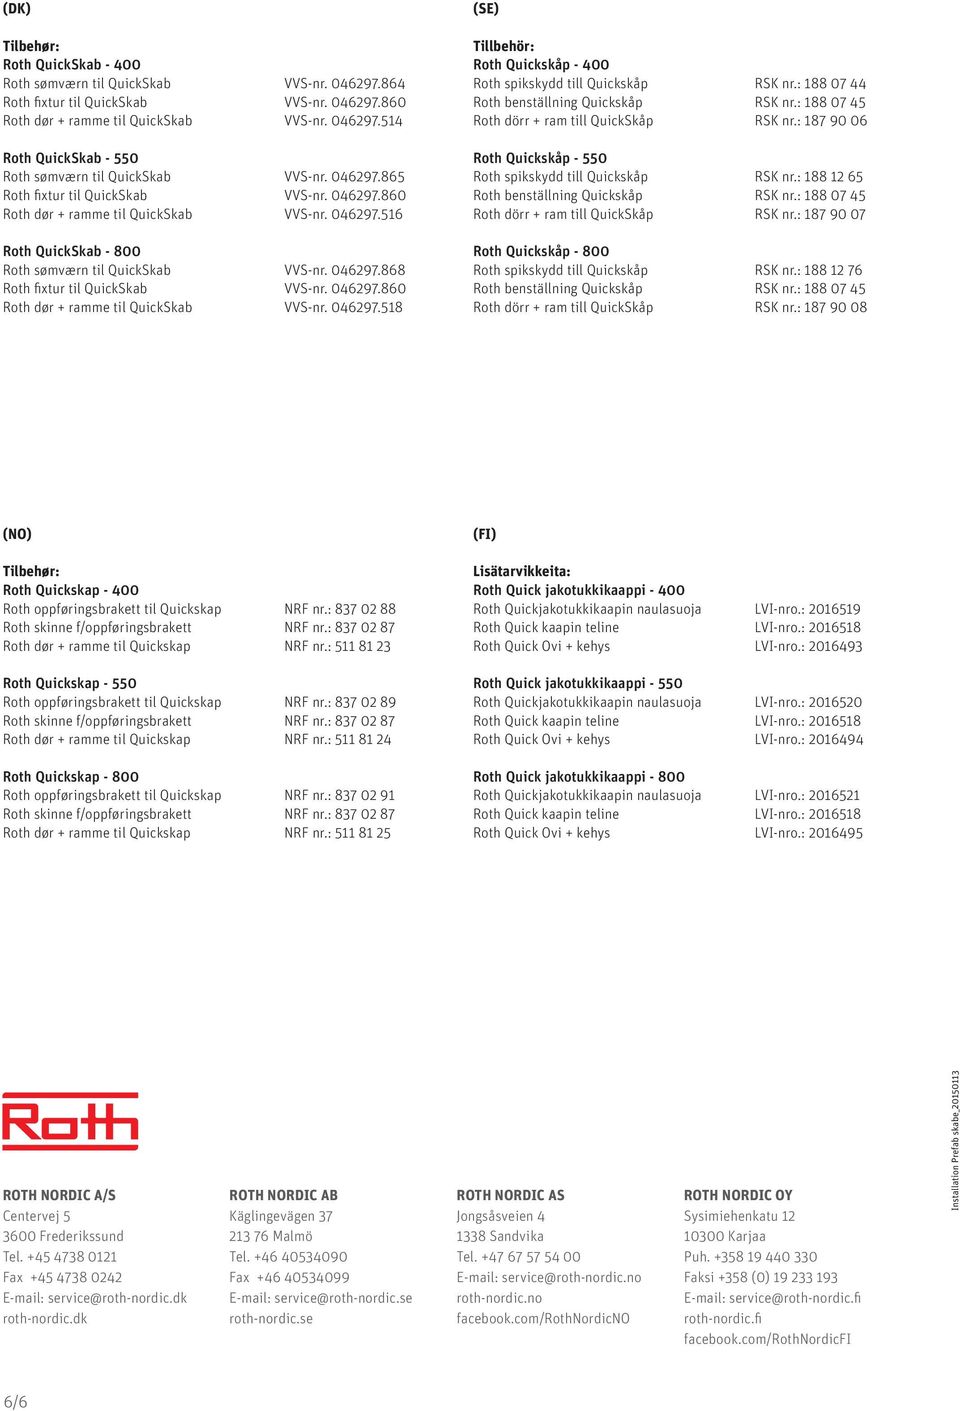 046297.860 Roth dør + ramme til QuickSkab VVS-nr. 046297.518 (SE) Tillbehör: Roth Quickskåp - 400 Roth spikskydd till Quickskåp RSK nr.: 188 07 44 Roth benställning Quickskåp RSK nr.